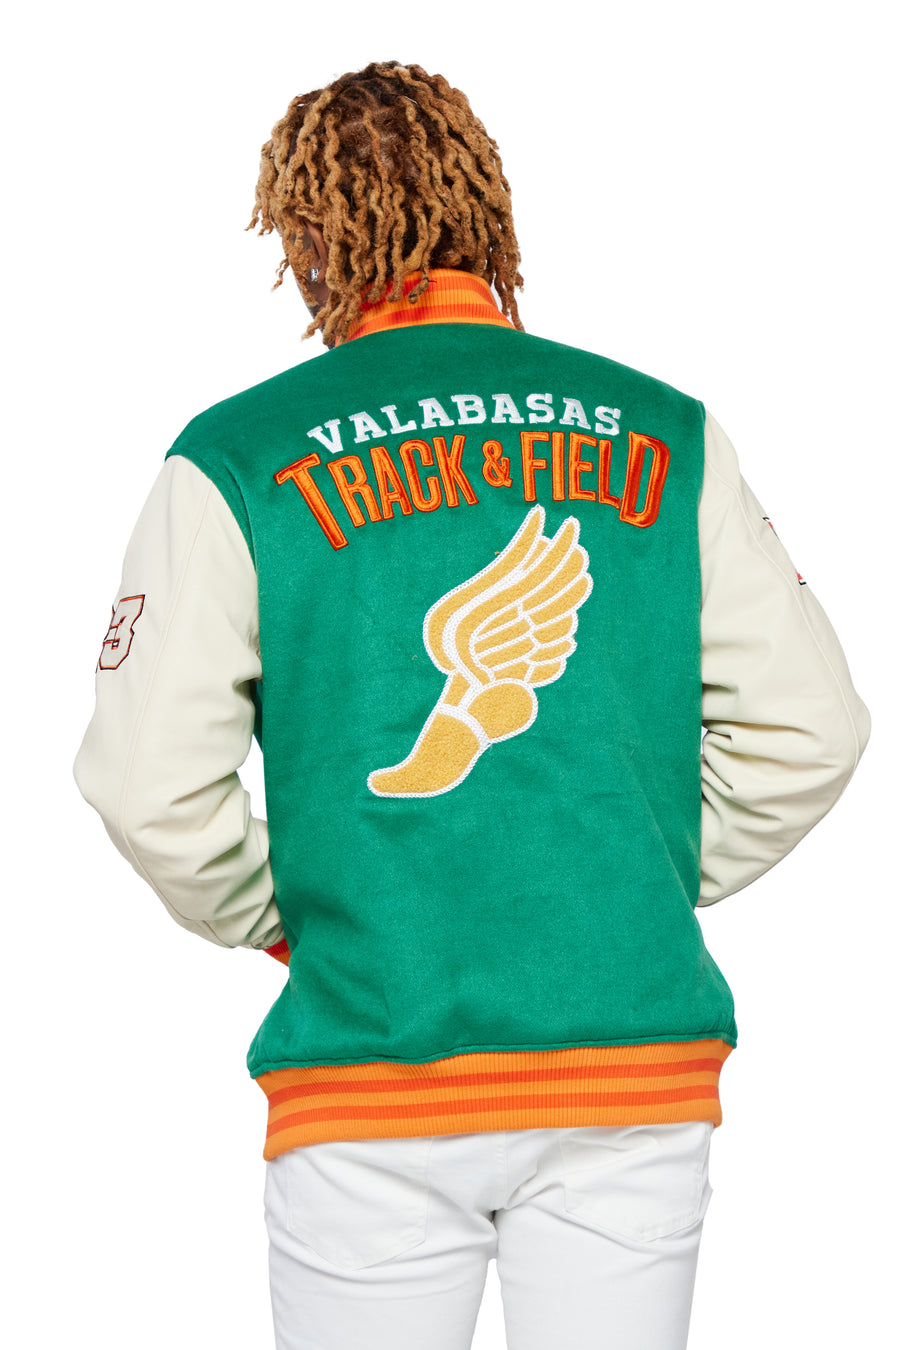 Valabasas 'Skulls Varsity' Jacket - Men's Varsity Jacket - (Green) Green / XL